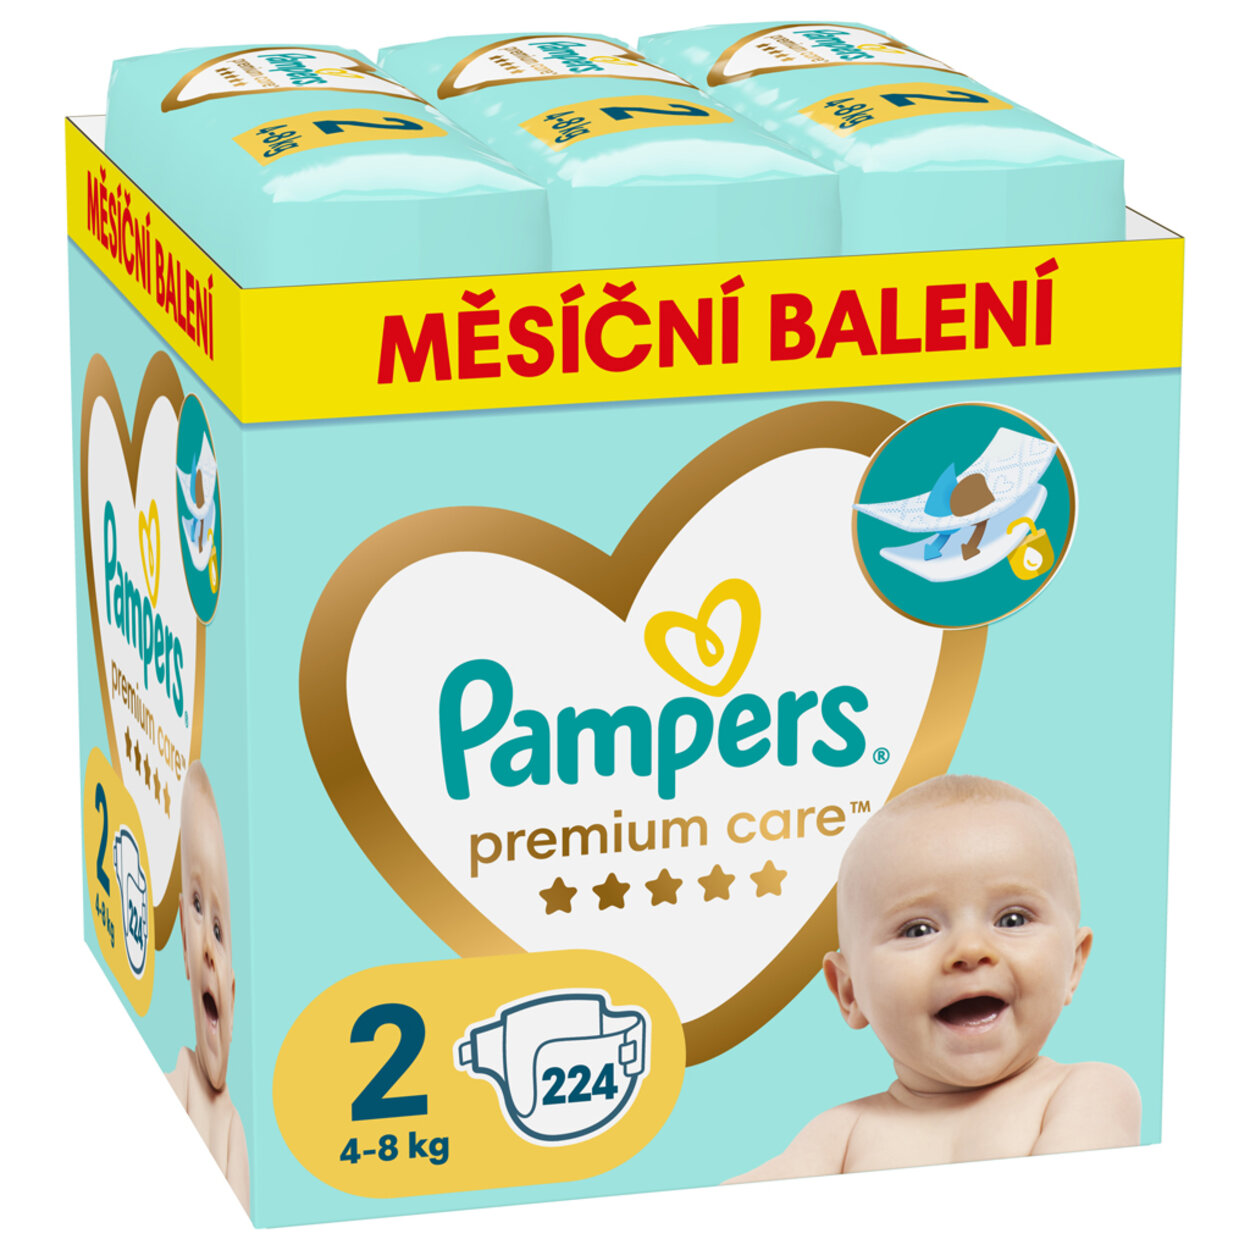 PAMPERS Plienky jednorázové Premium Care veľ. 2 (224 ks) 4-8 kg - mesačné  balenie | Predeti.sk